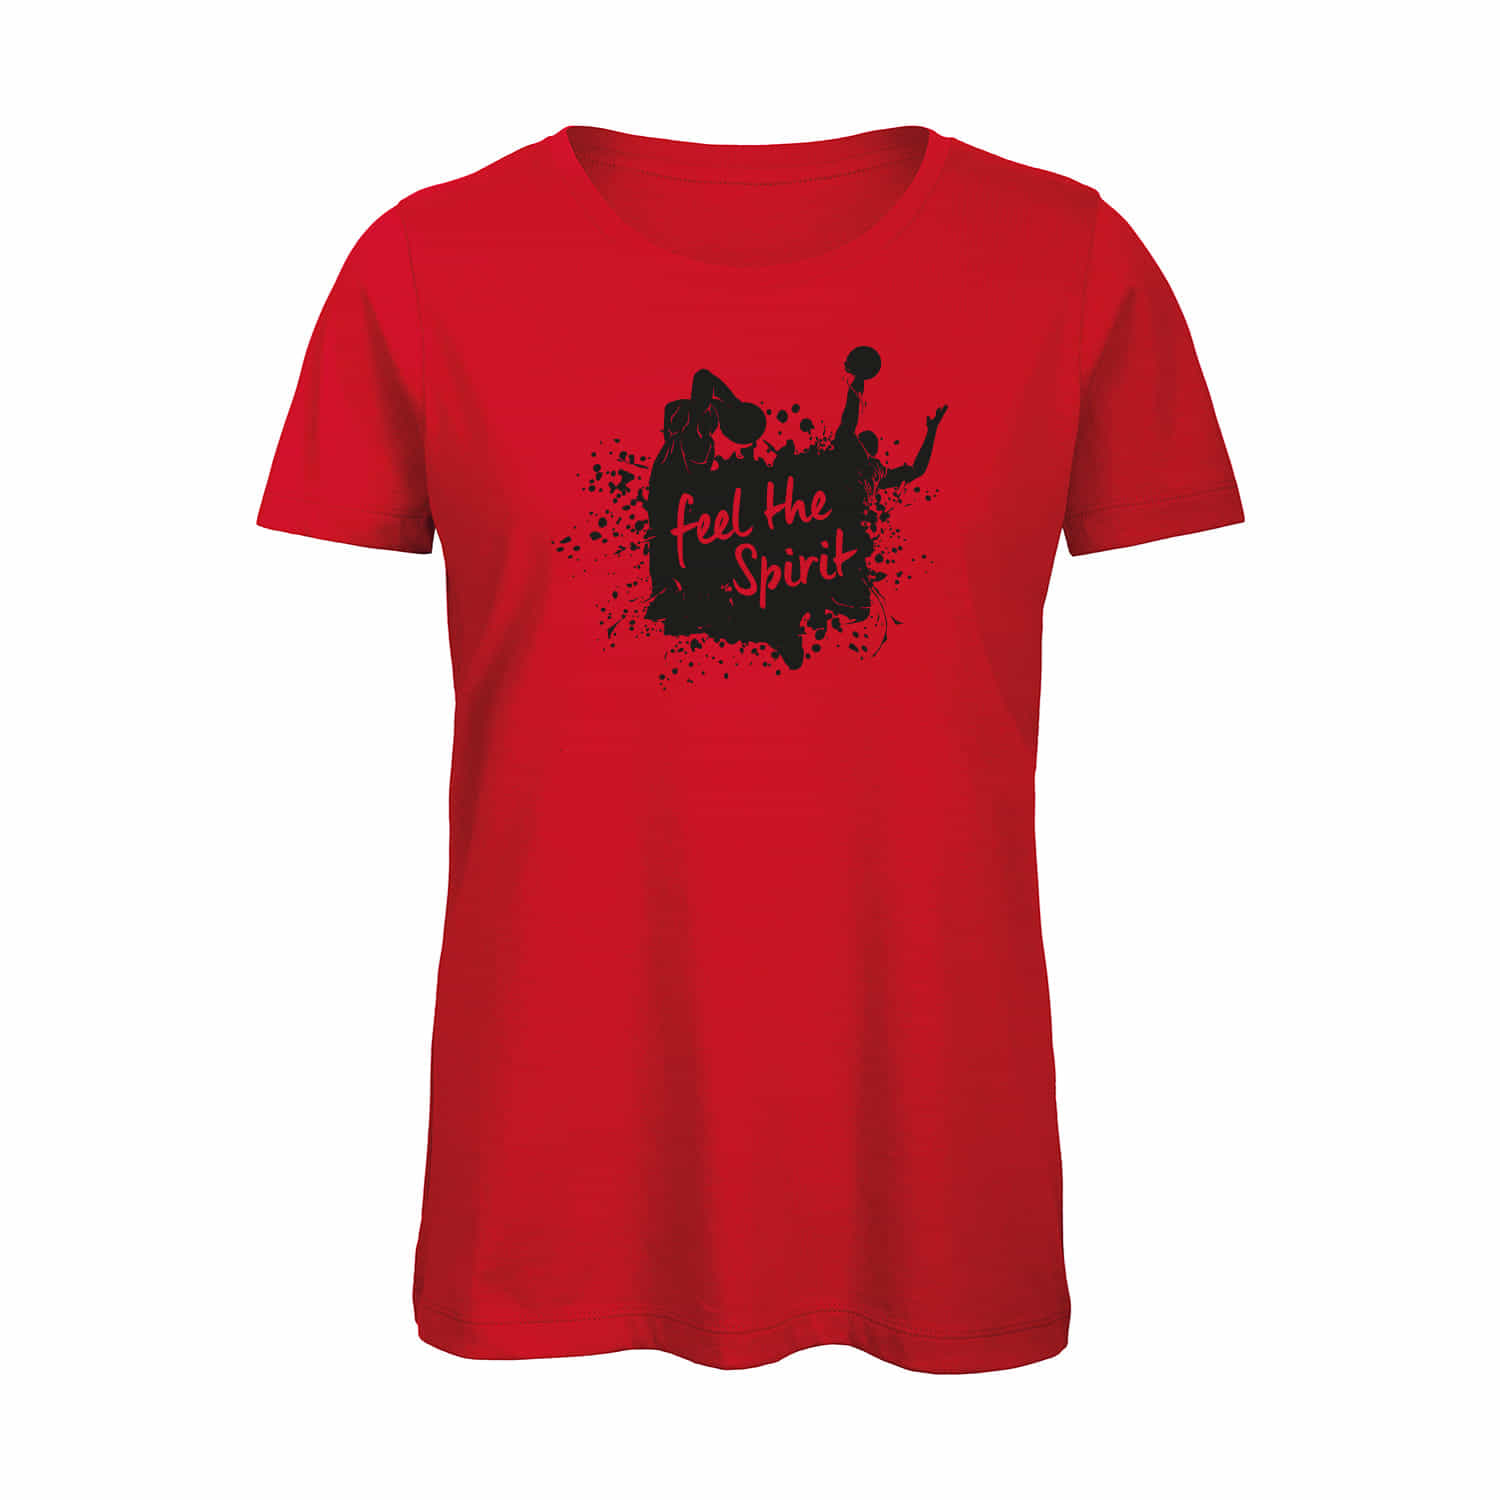 Damen T-Shirt "Feel the Spirit"